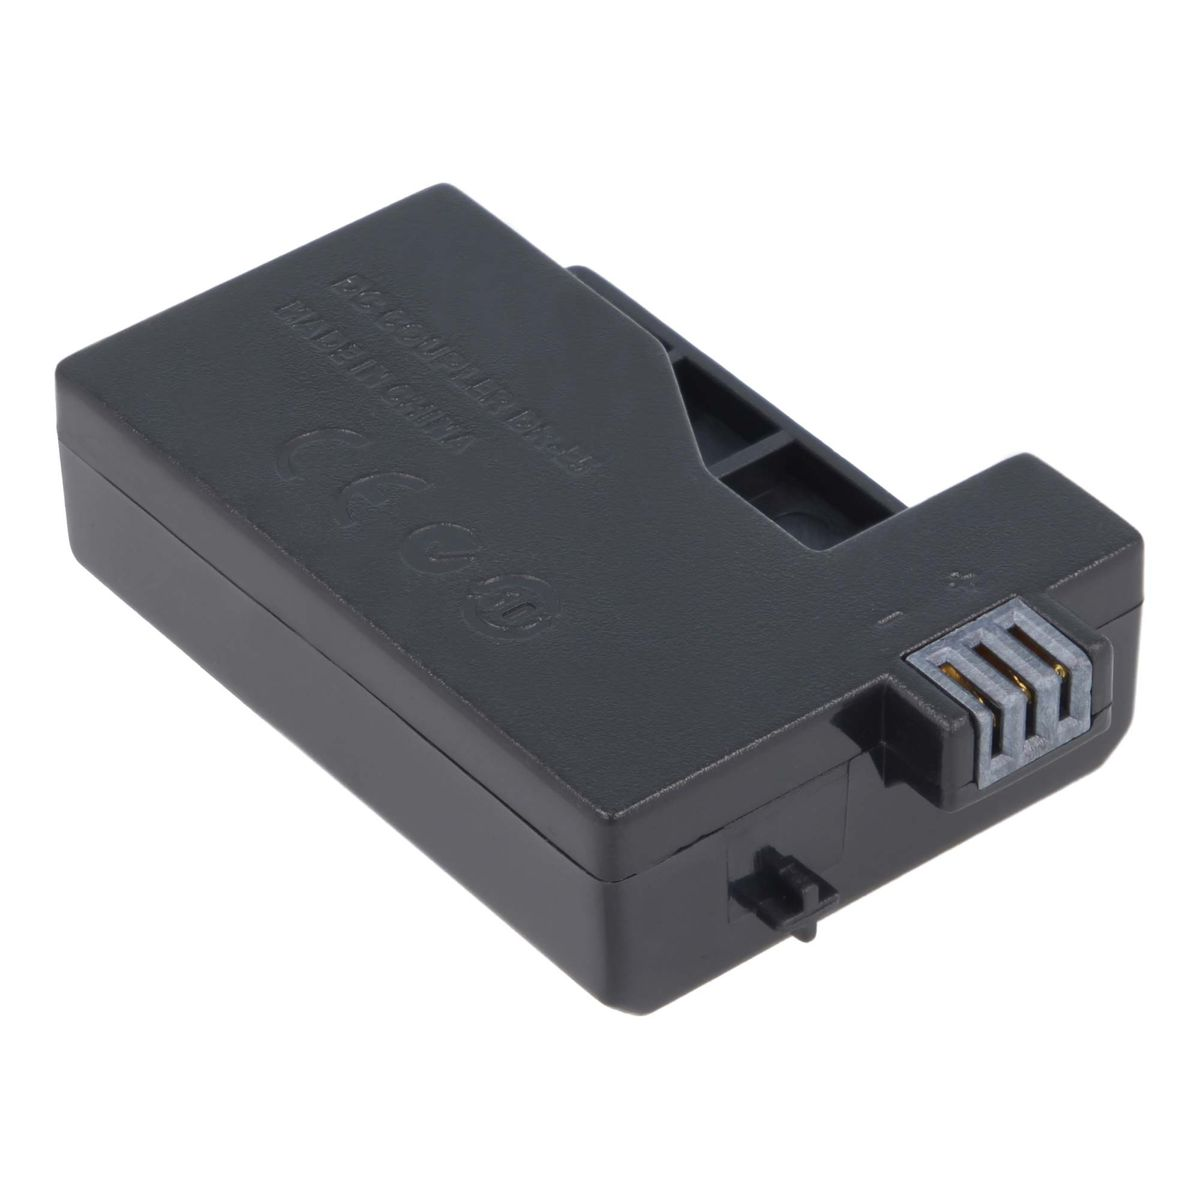 AKKU-KING USB Adapter + Kuppler kompatibel mit DR-E5 Angabe Ladegerät keine Canon Canon